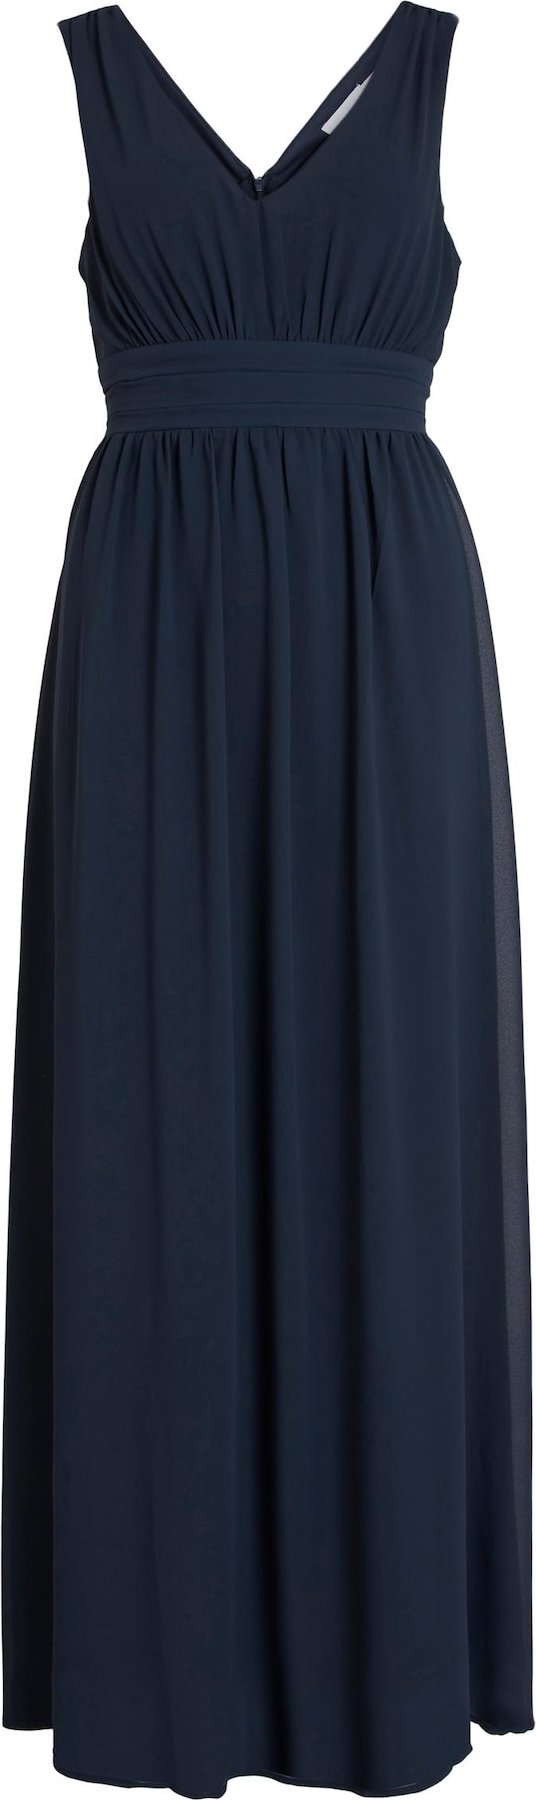 VILA Společenské šaty 'Milina' tmavě modrá